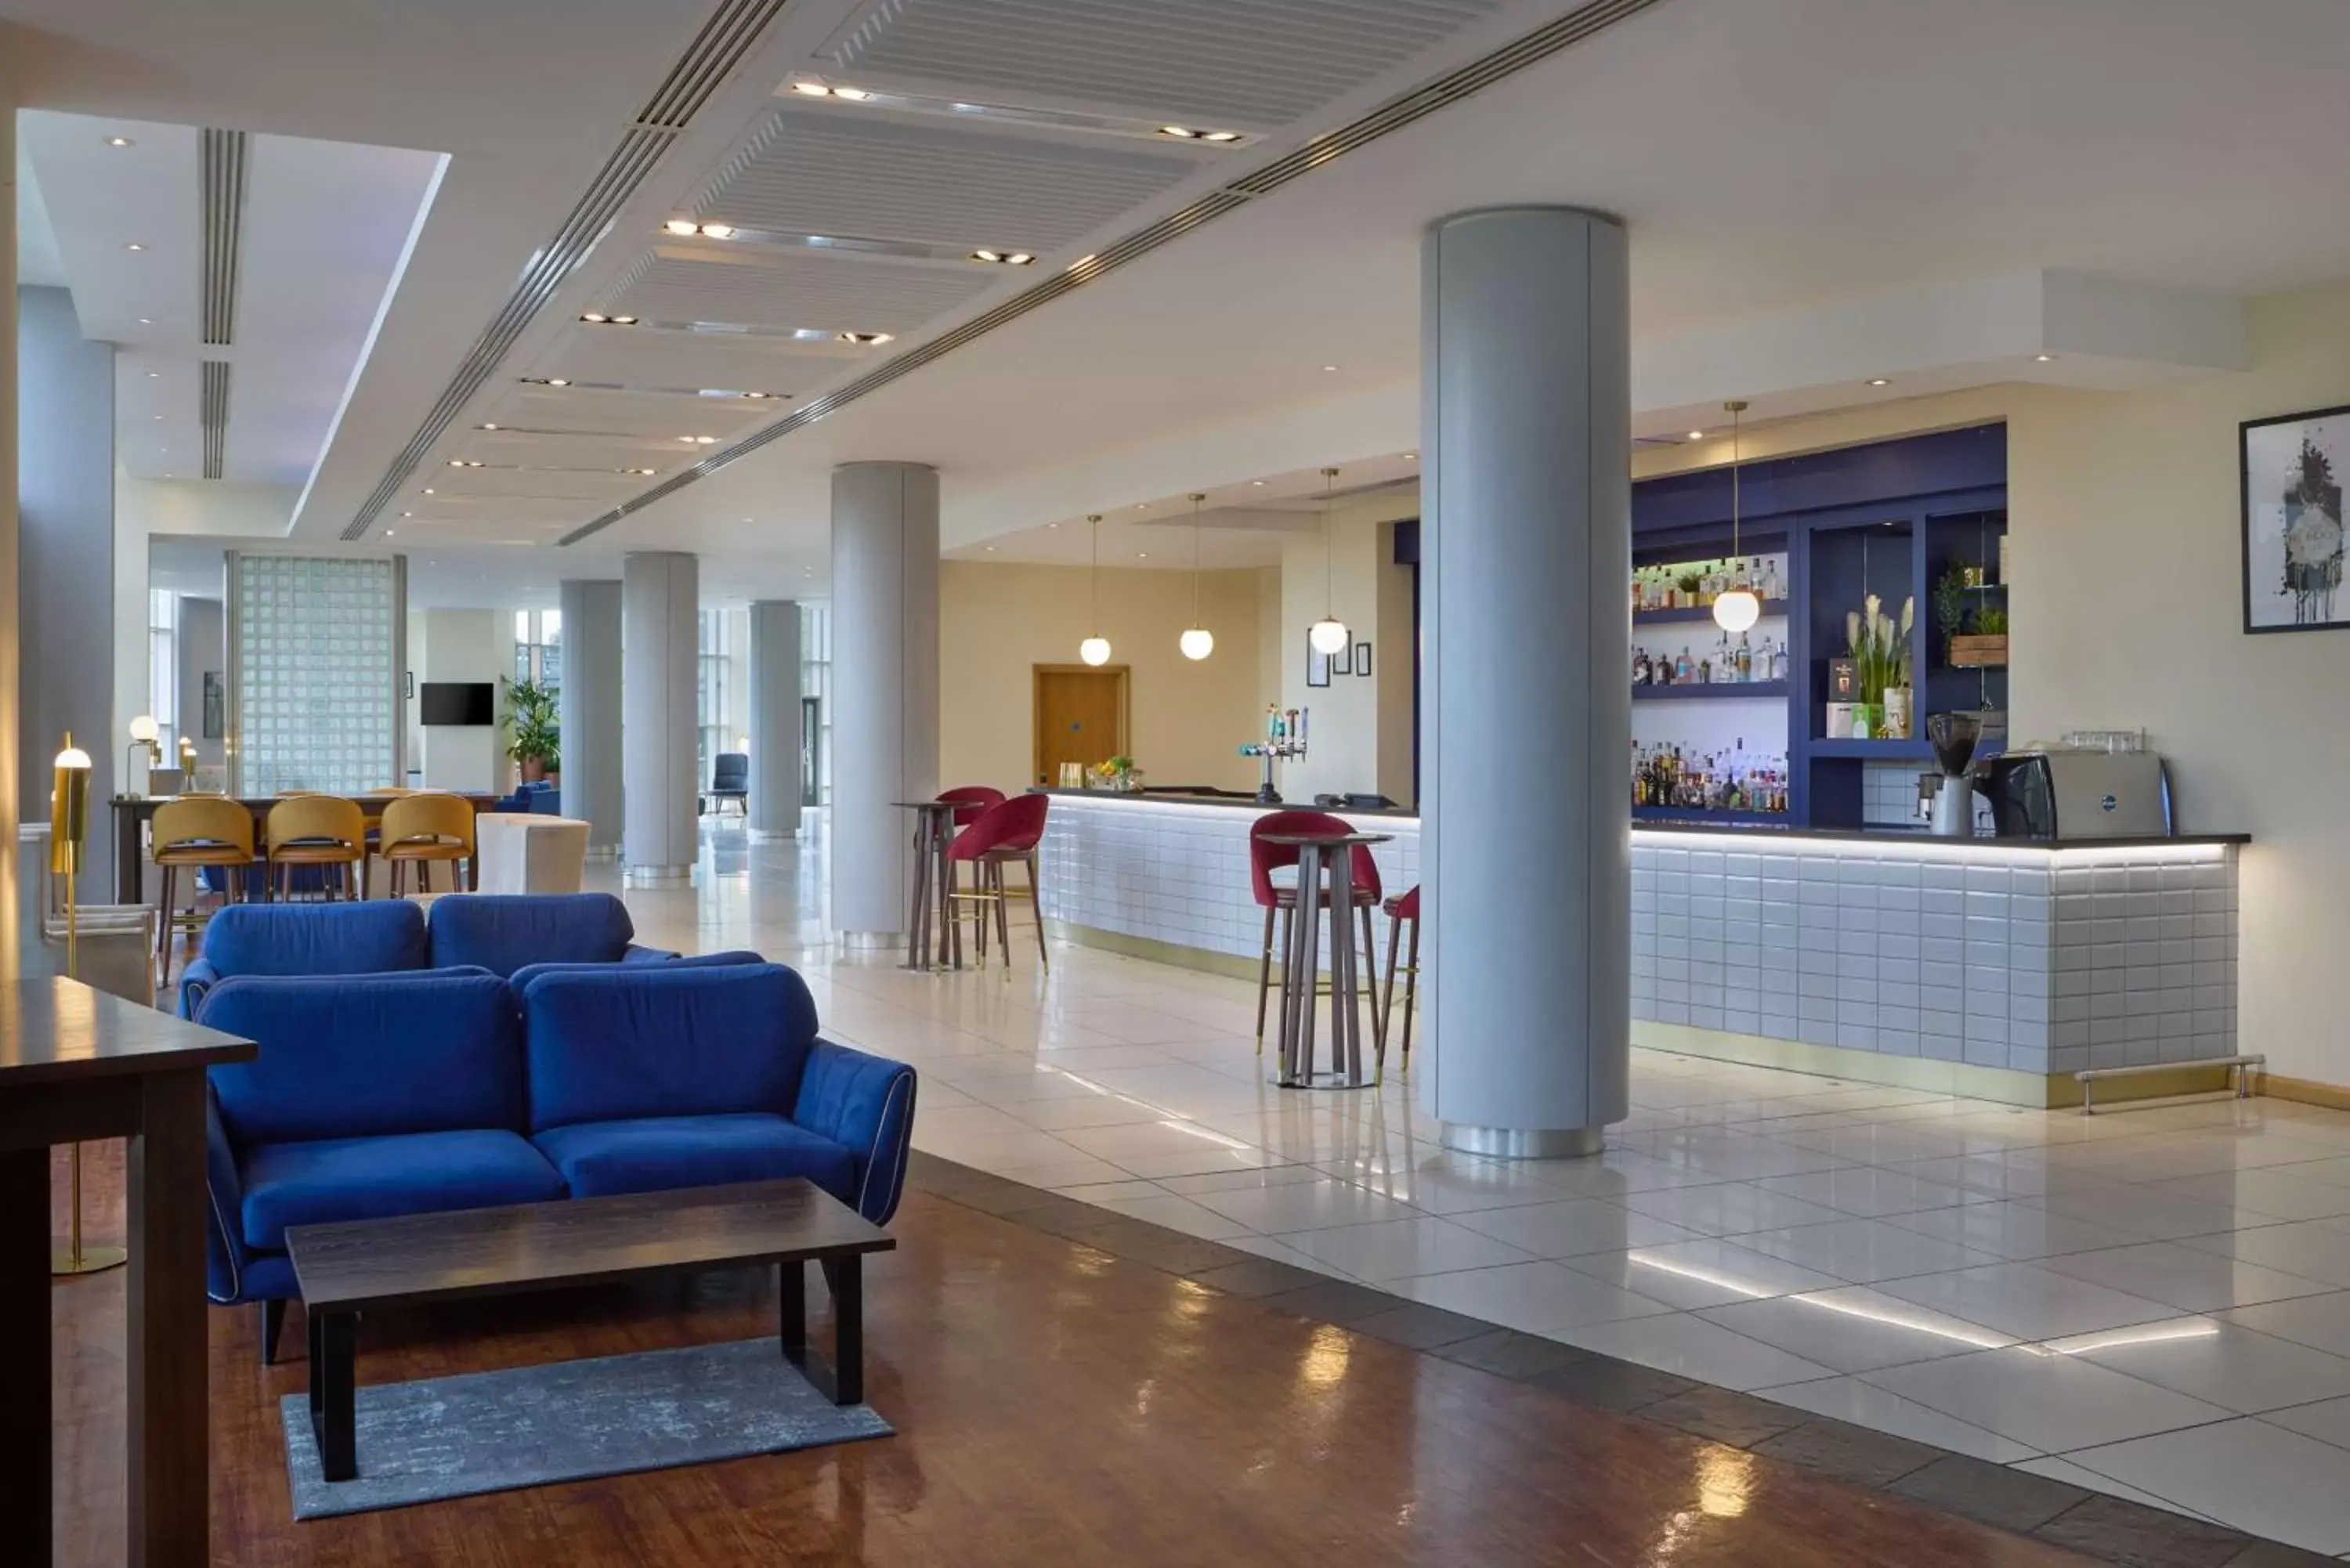 Lounge or bar, Lobby/Reception in Hilton Newcastle Gateshead